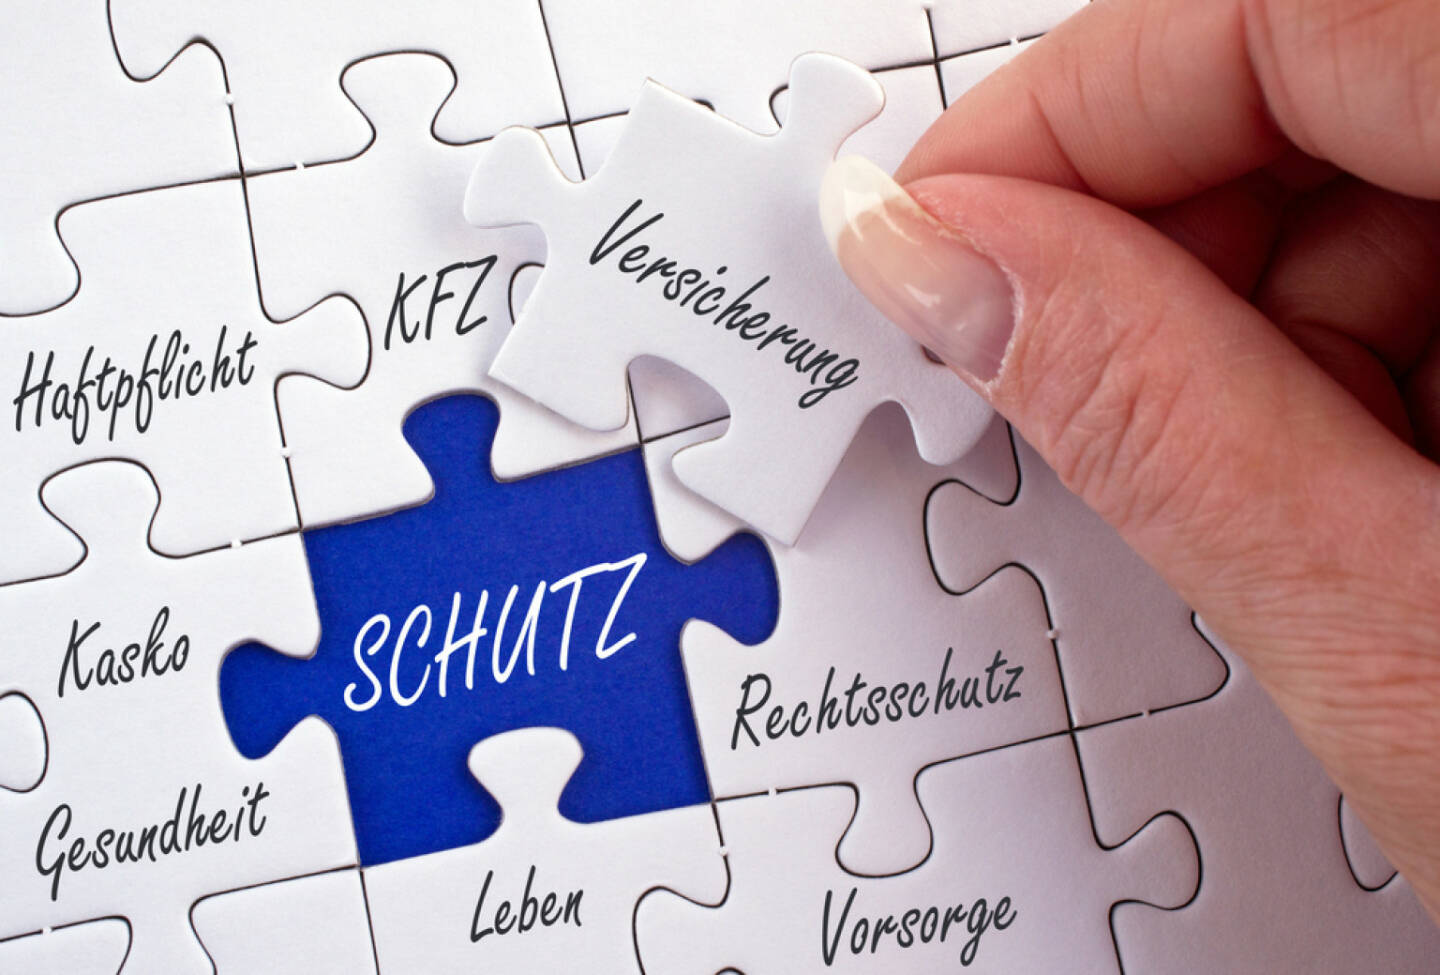 Versicherung, Schutz, Versicherer, http://www.shutterstock.com/de/pic-167065115/stock-photo-insurance-concept-german-language.html